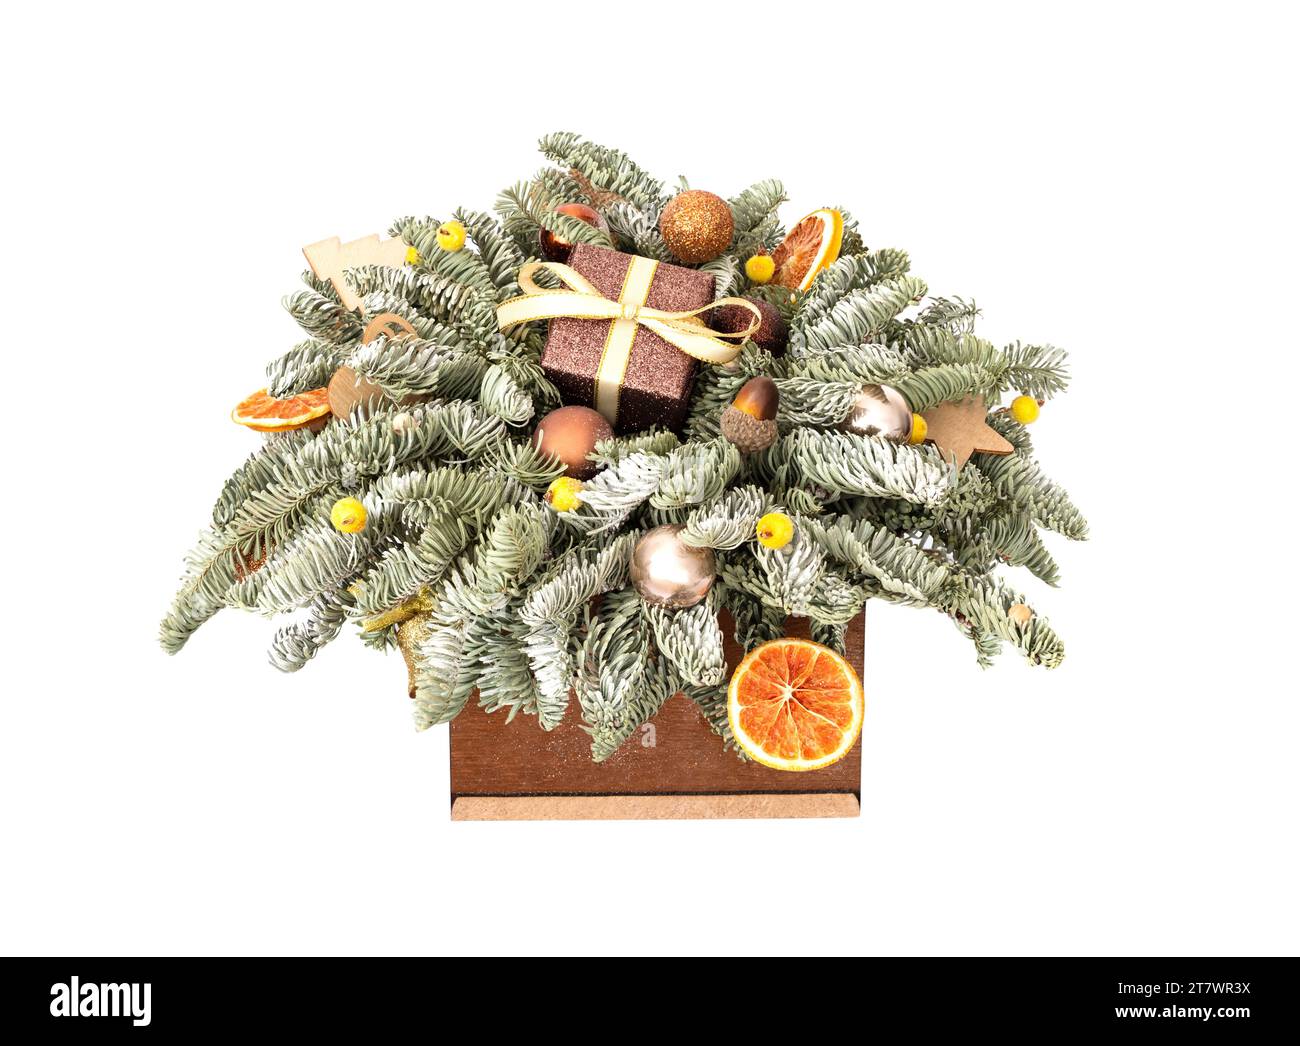 Bouquet natalizio con rami di abete, regali e decorazioni natalizie in una scatola di legno isolata su sfondo bianco. Bella composizione per il nuovo anno. Foto Stock